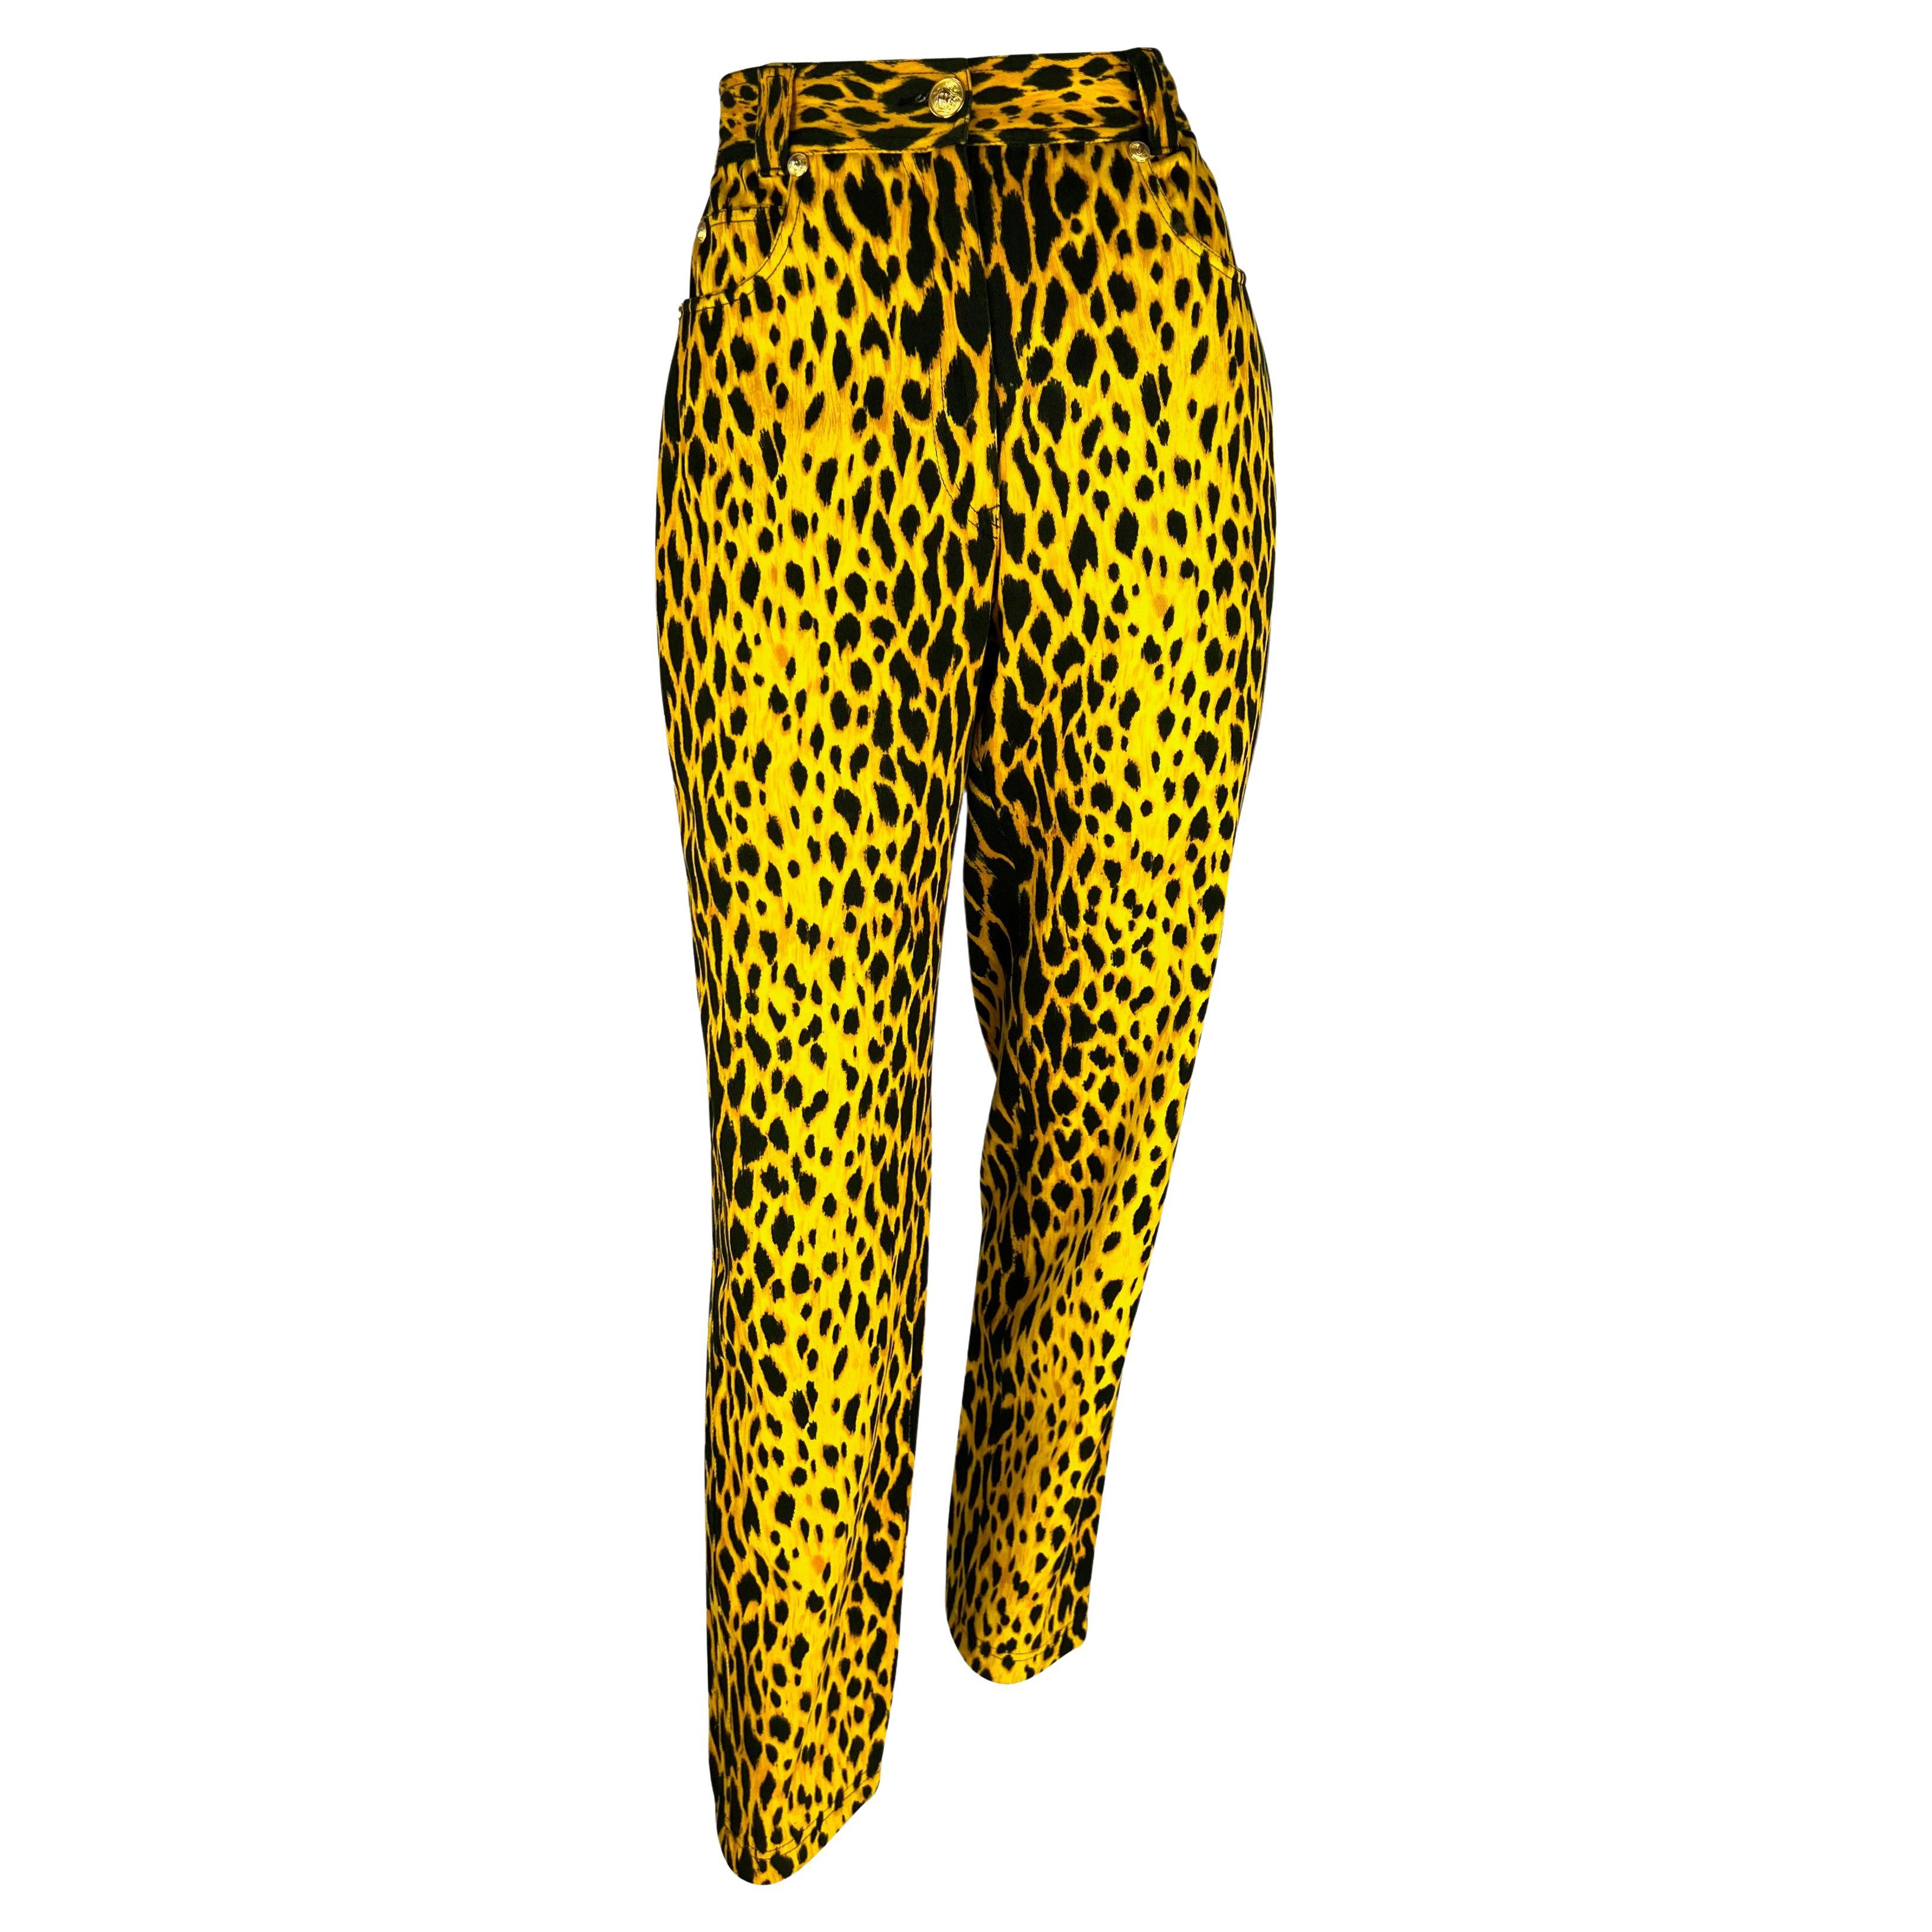 S/S 1992 Gianni Versace Laufsteg Gepardendruck Gelb Schwarz Baumwolle Stretch Jeans